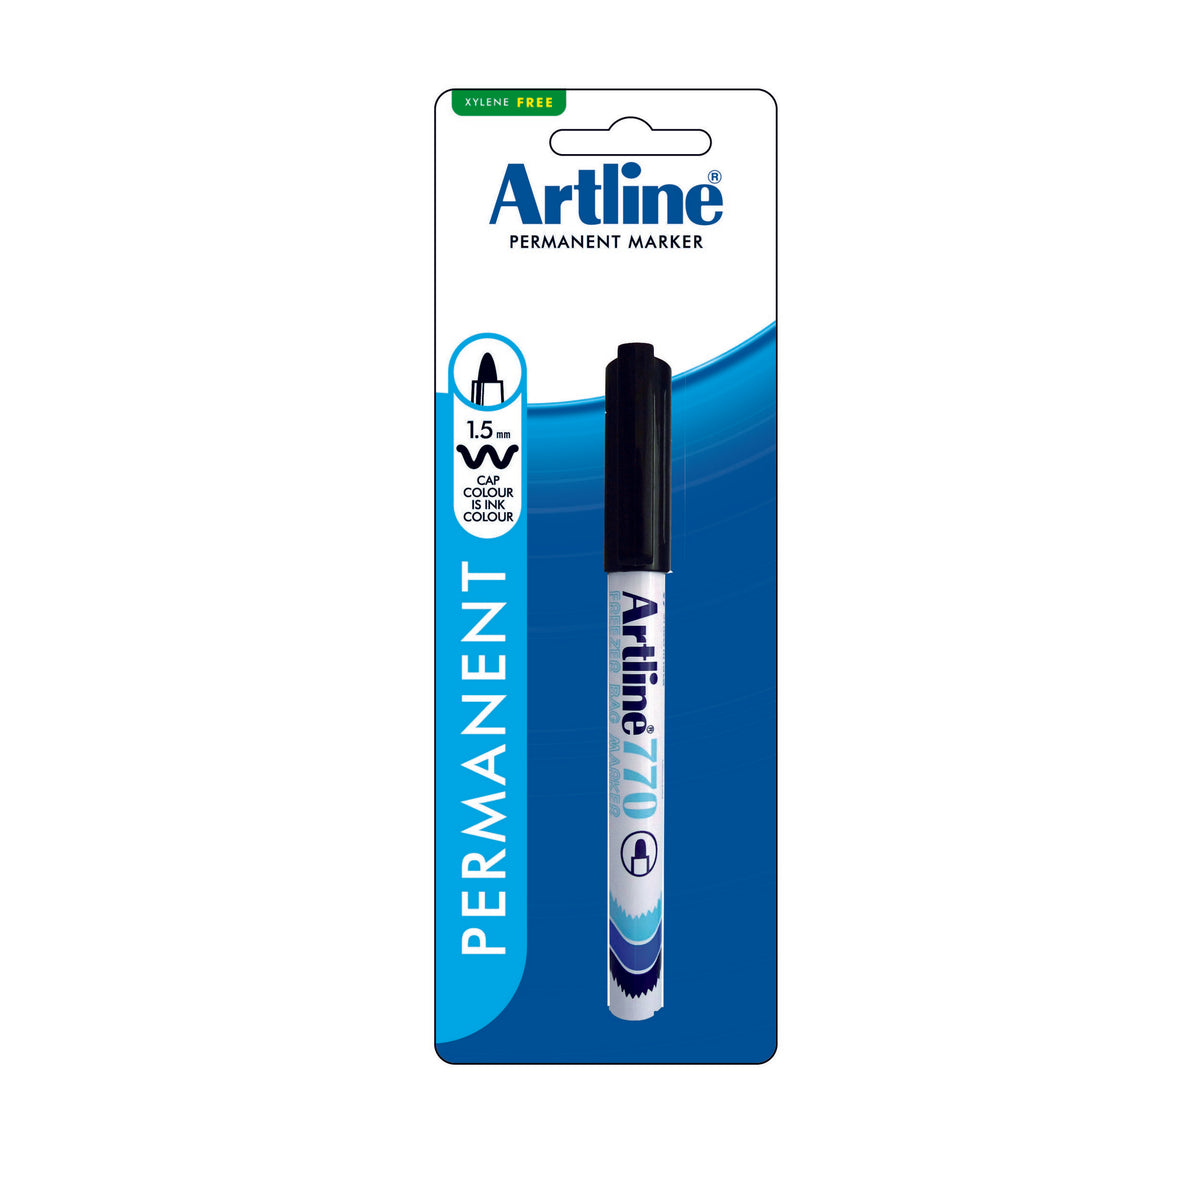 Artline 770 Freezer Bag Marker 1.0mm Nib Black